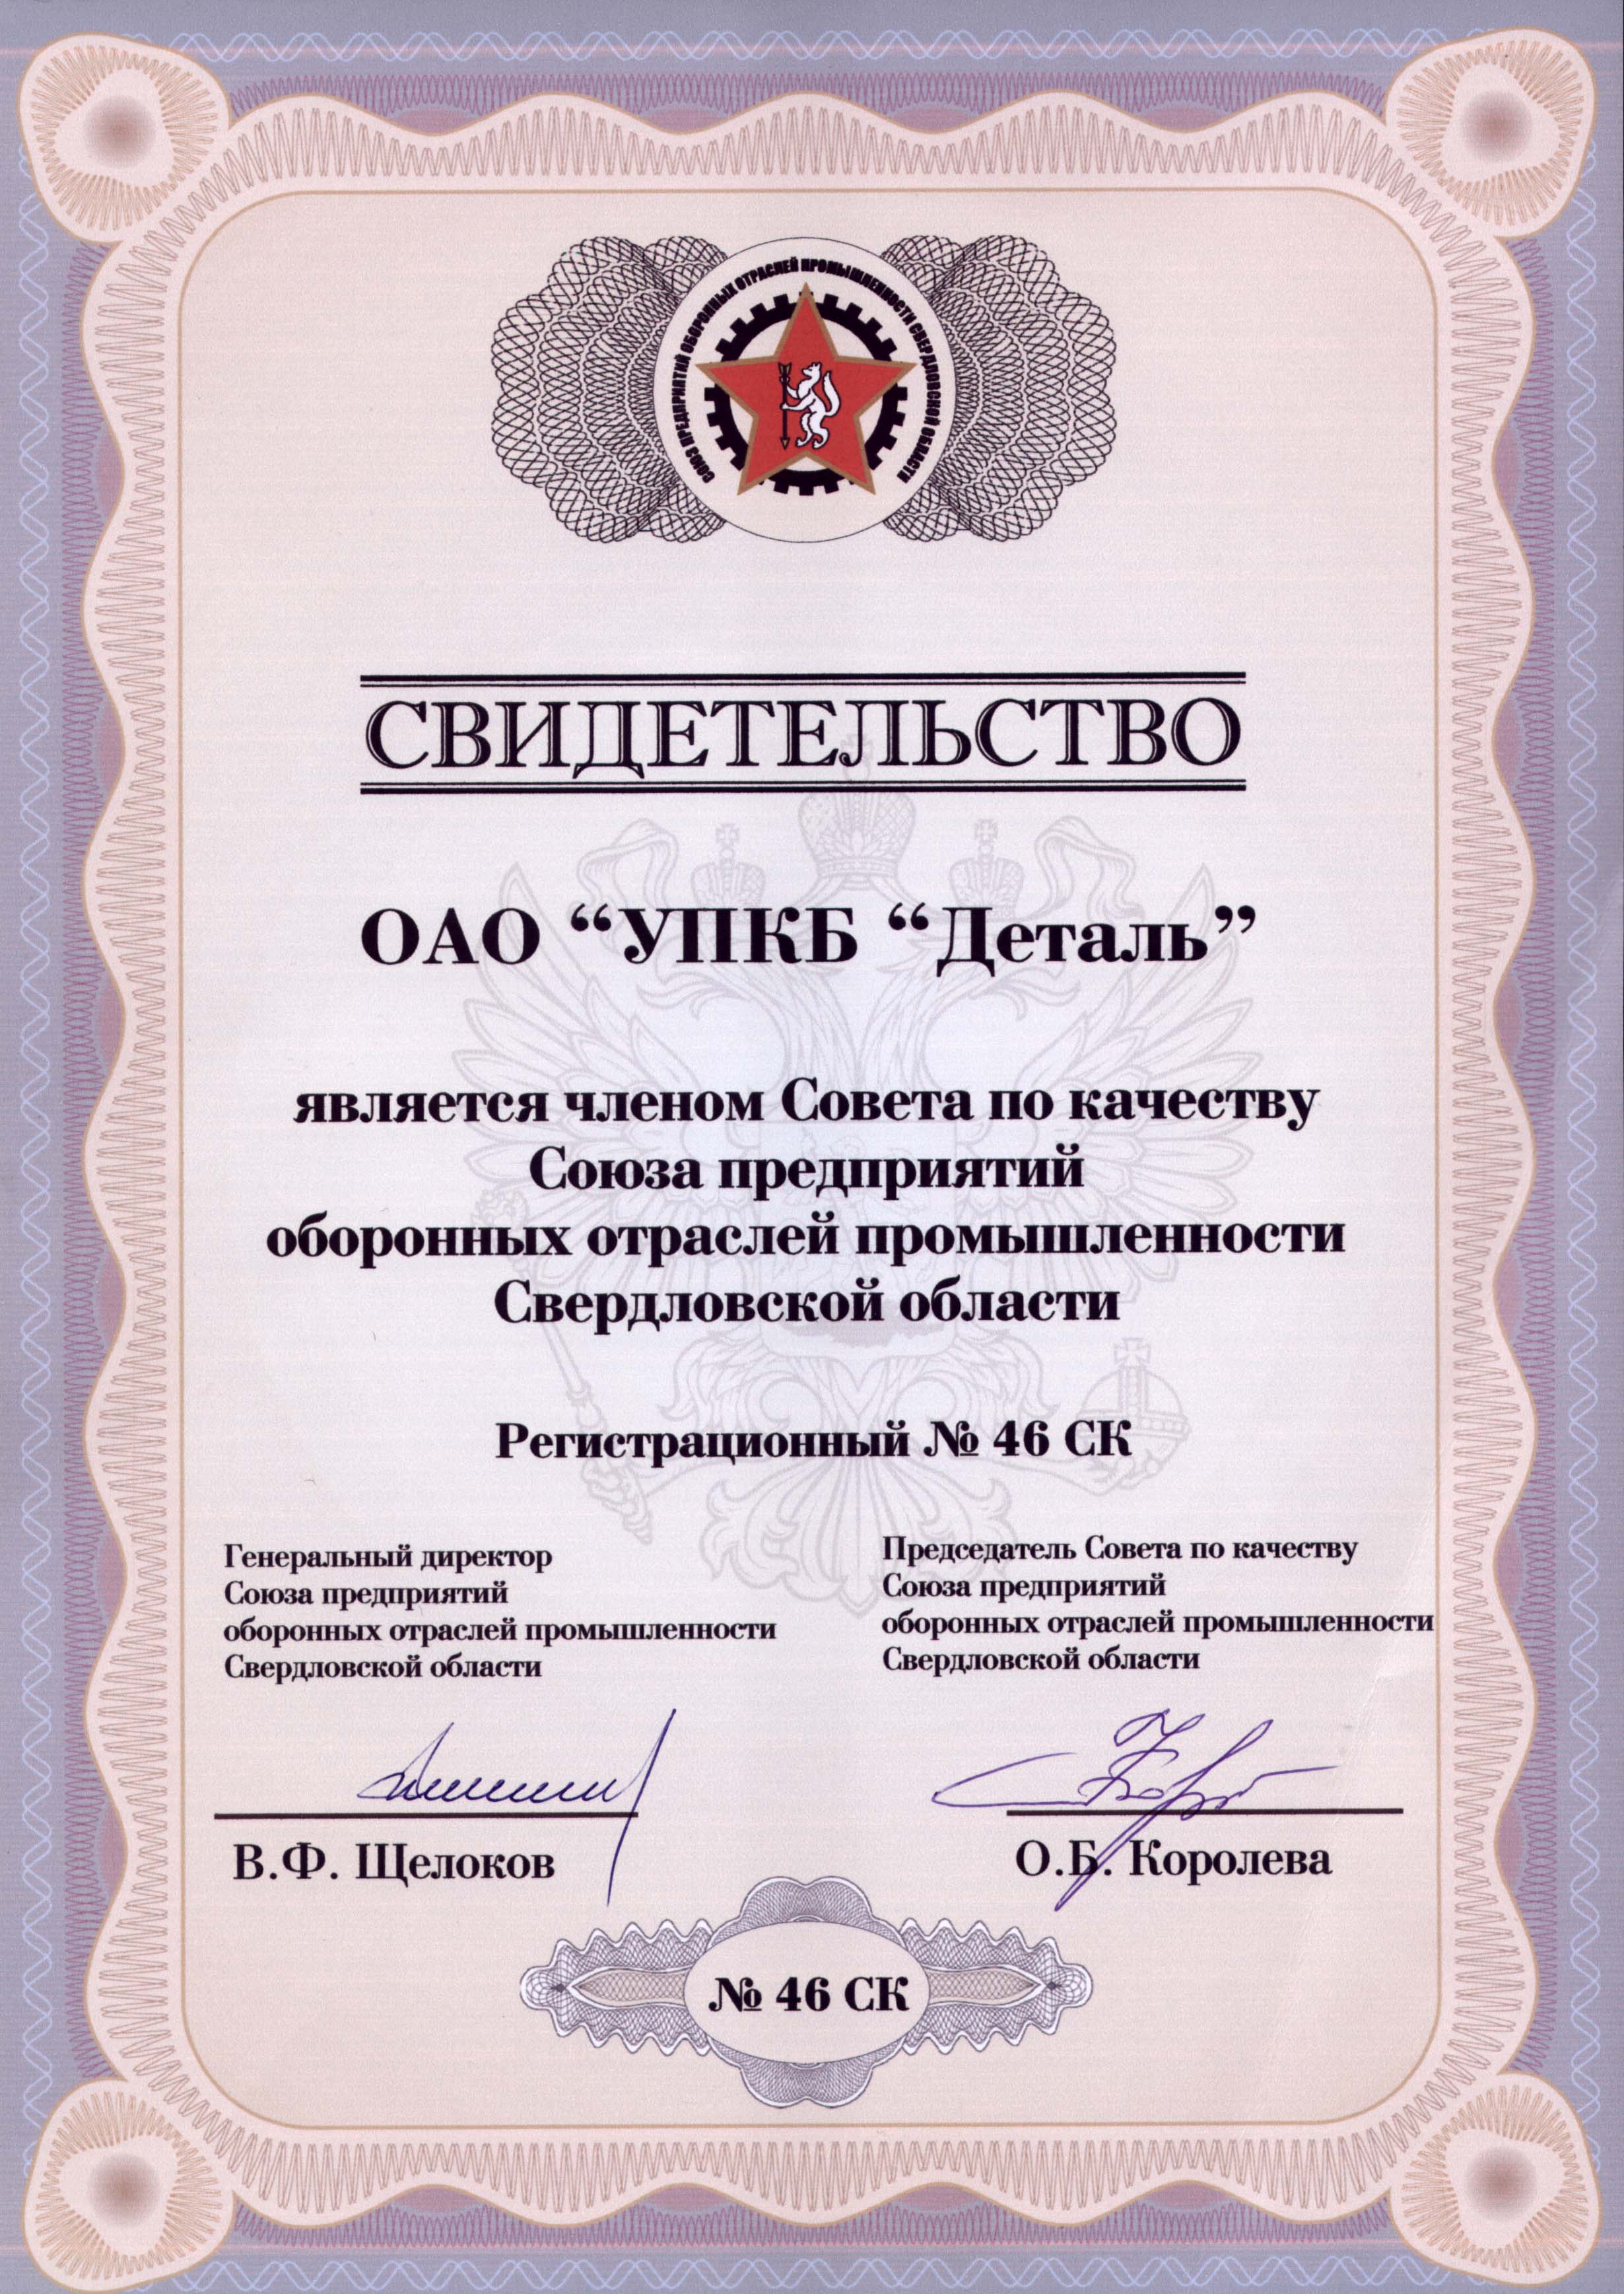 Свидетельство о членстве в совете по качеству Союза предприятий оборонных отраслей промышленности Свердловской области